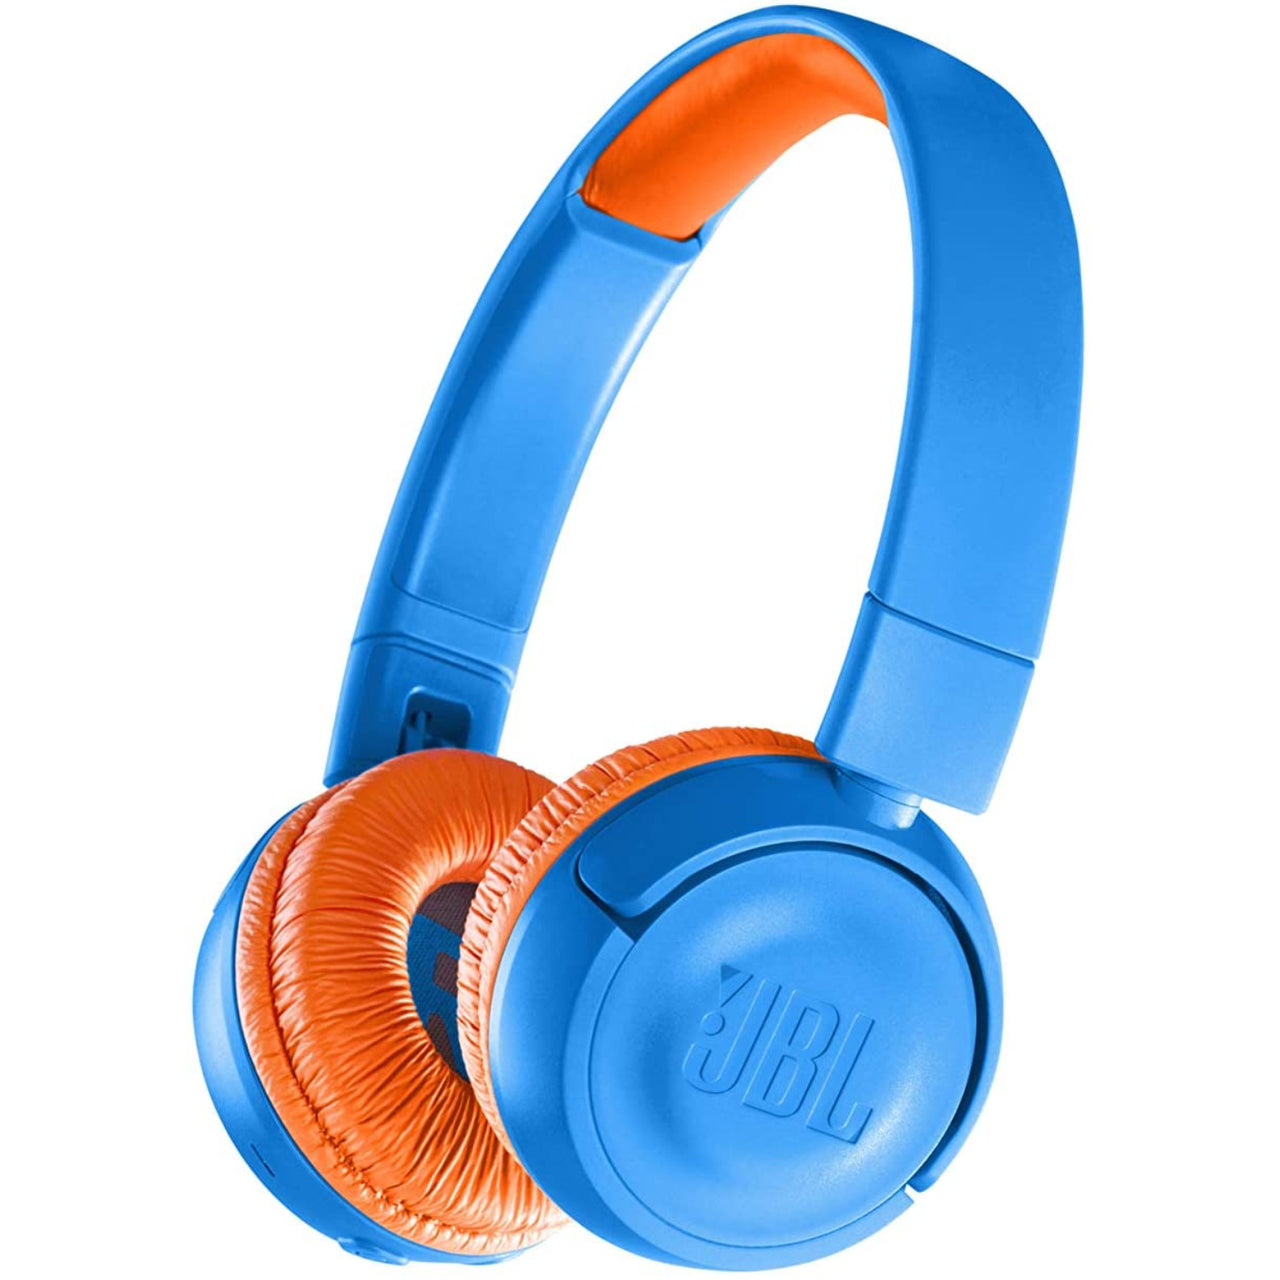 JBL JR300 Kids On Ear Wireless Bluetooth Headphone - Blue